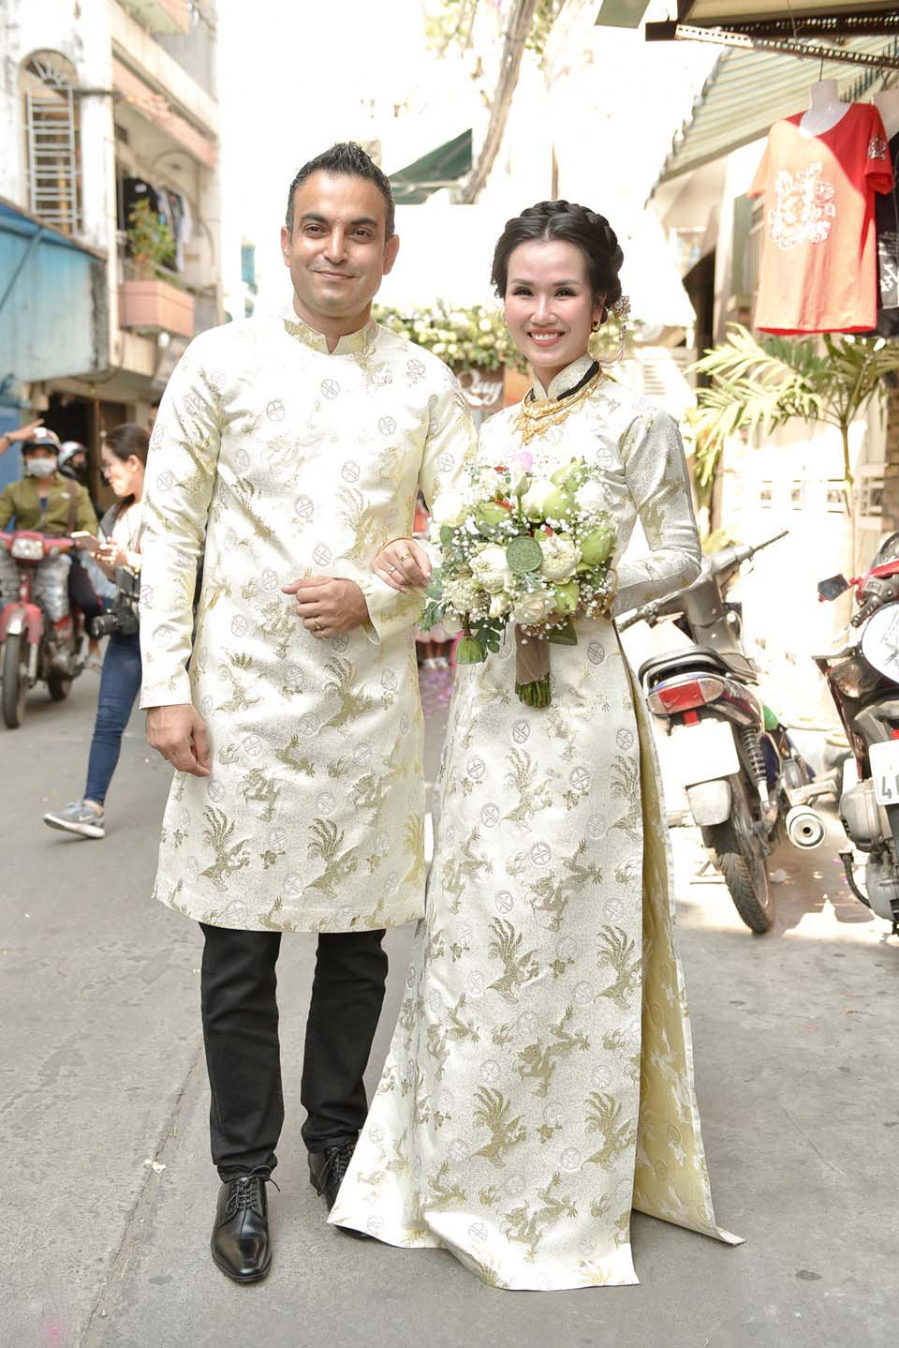 Sau lễ rước dâu, hai vợ chồng sẽ làm lễ hằng thuận ở chùa Di Lặc, TP.HCM. Lễ cưới được tổ chức tại một khách sạn 5 sao ở quận 1. TP.HCM.